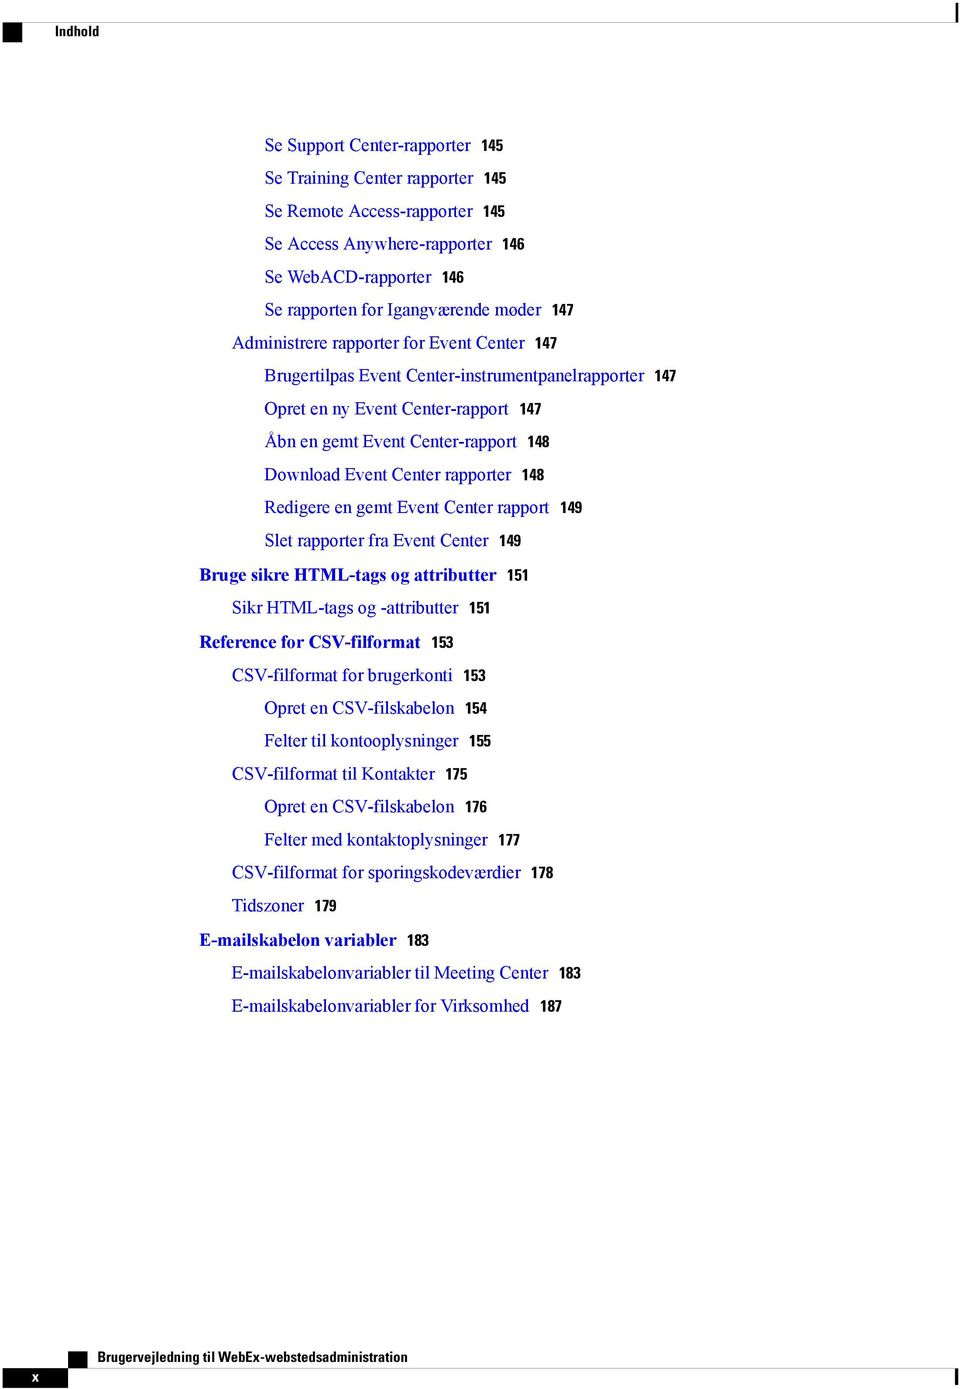 rapporter 148 Redigere en gemt Event Center rapport 149 Slet rapporter fra Event Center 149 Bruge sikre HTML-tags og attributter 151 Sikr HTML-tags og -attributter 151 Reference for CSV-filformat 153